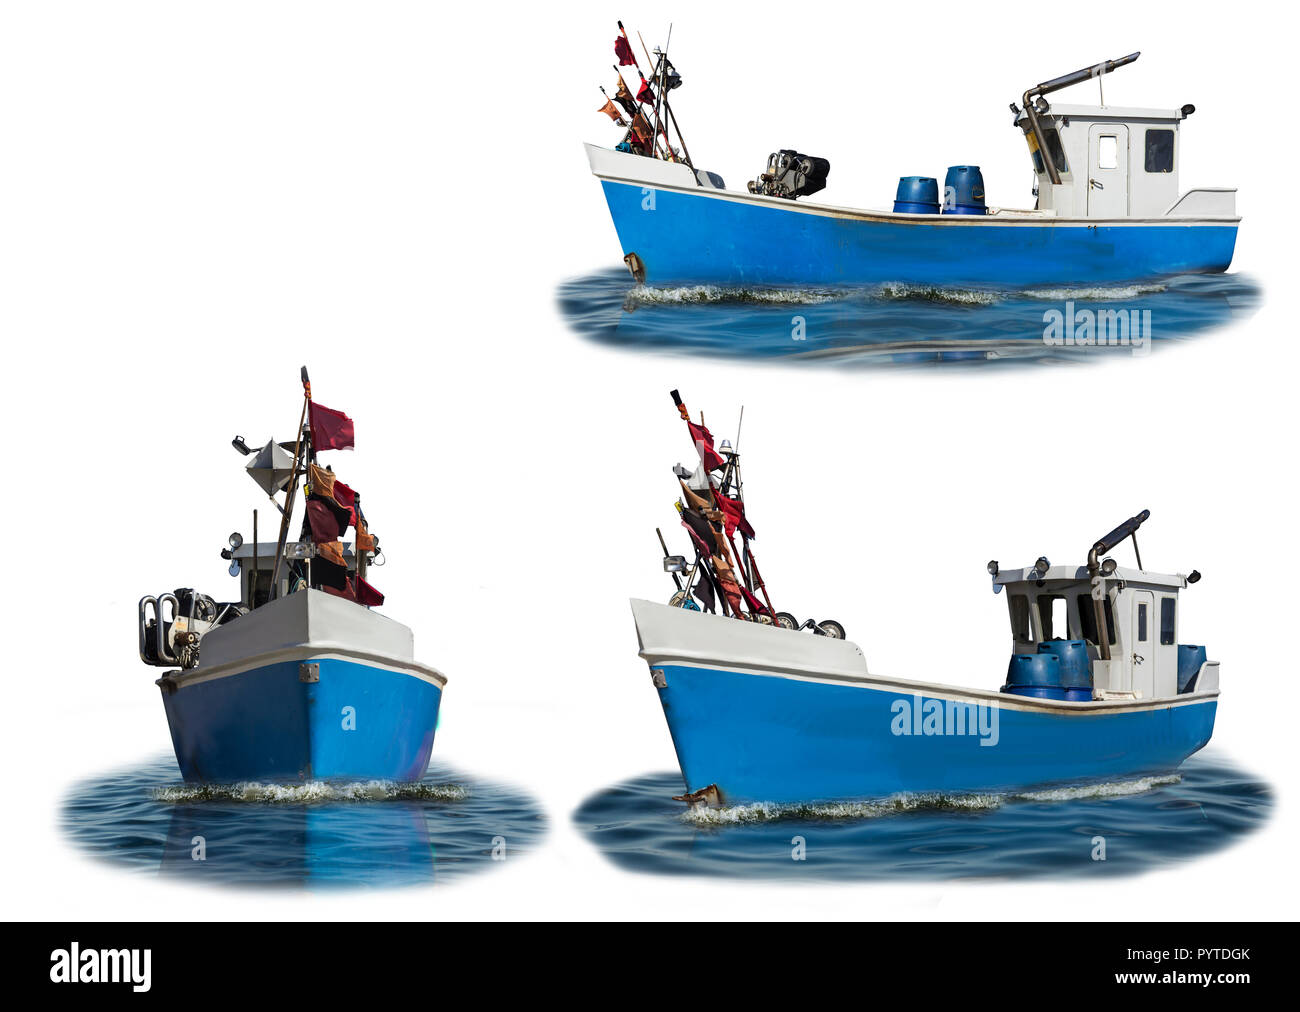 Mar Baltico.La barca con il blu custodia in plastica e la cabina di bianco. Tre wiews. Foto isolate. Il sito di pescatori, cantieristica navale, industria, romance. Foto Stock